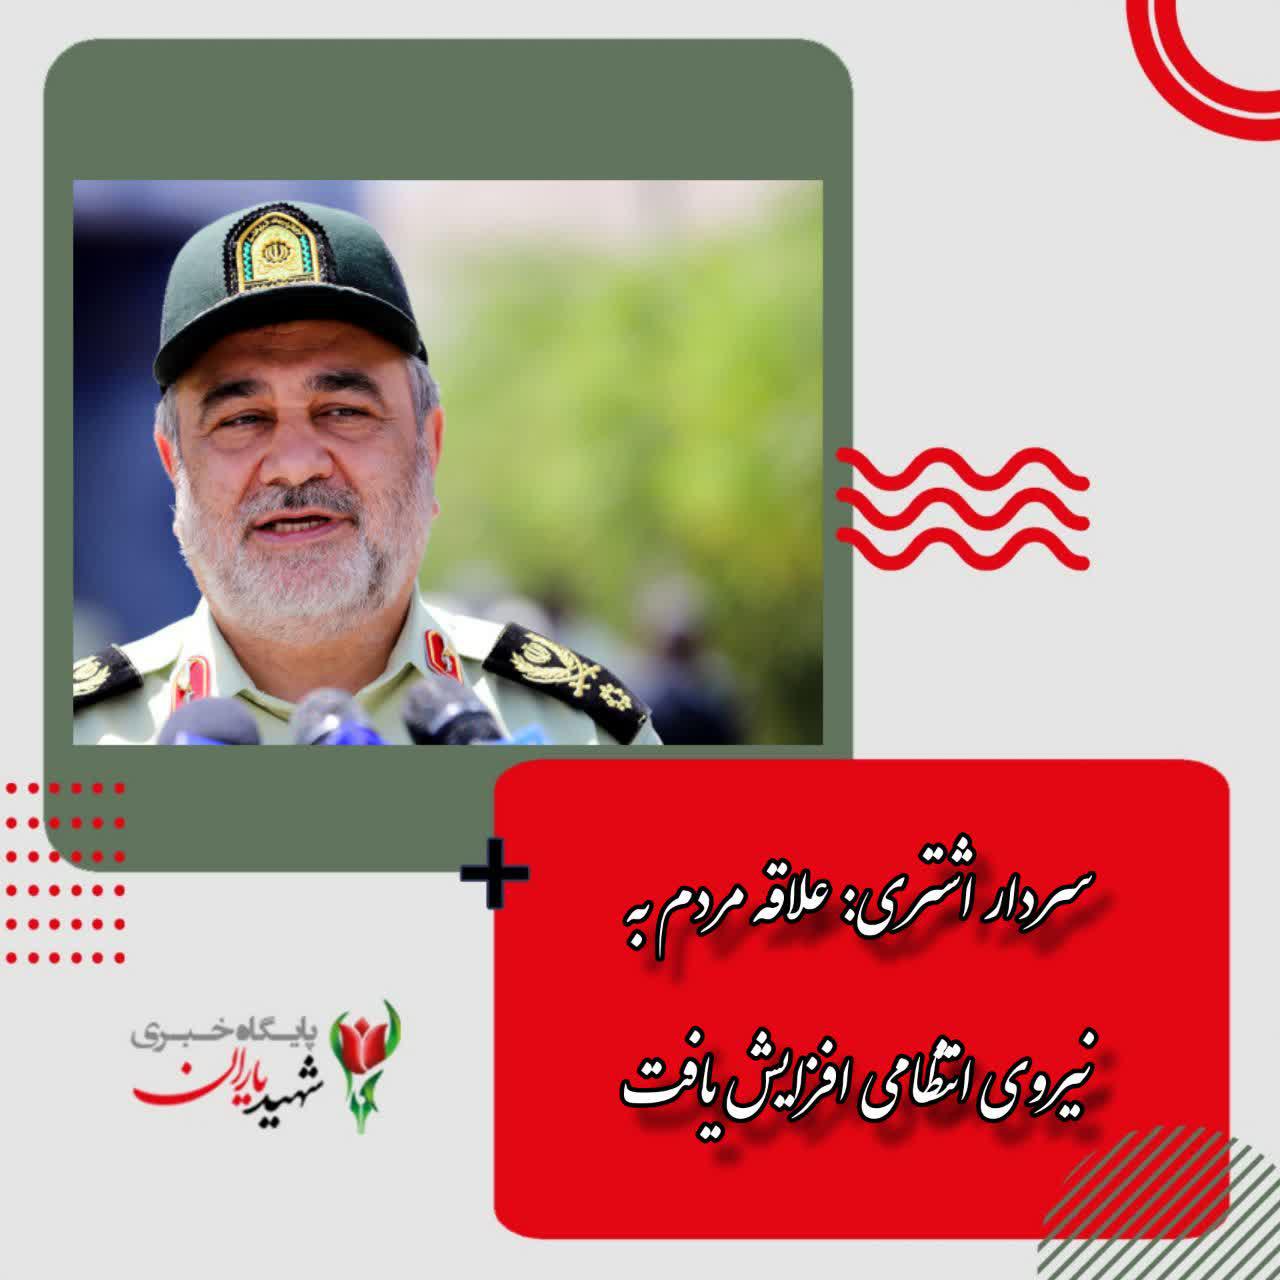 سردار اشتری: علاقه مردم به نیروی انتظامی افزایش یافت